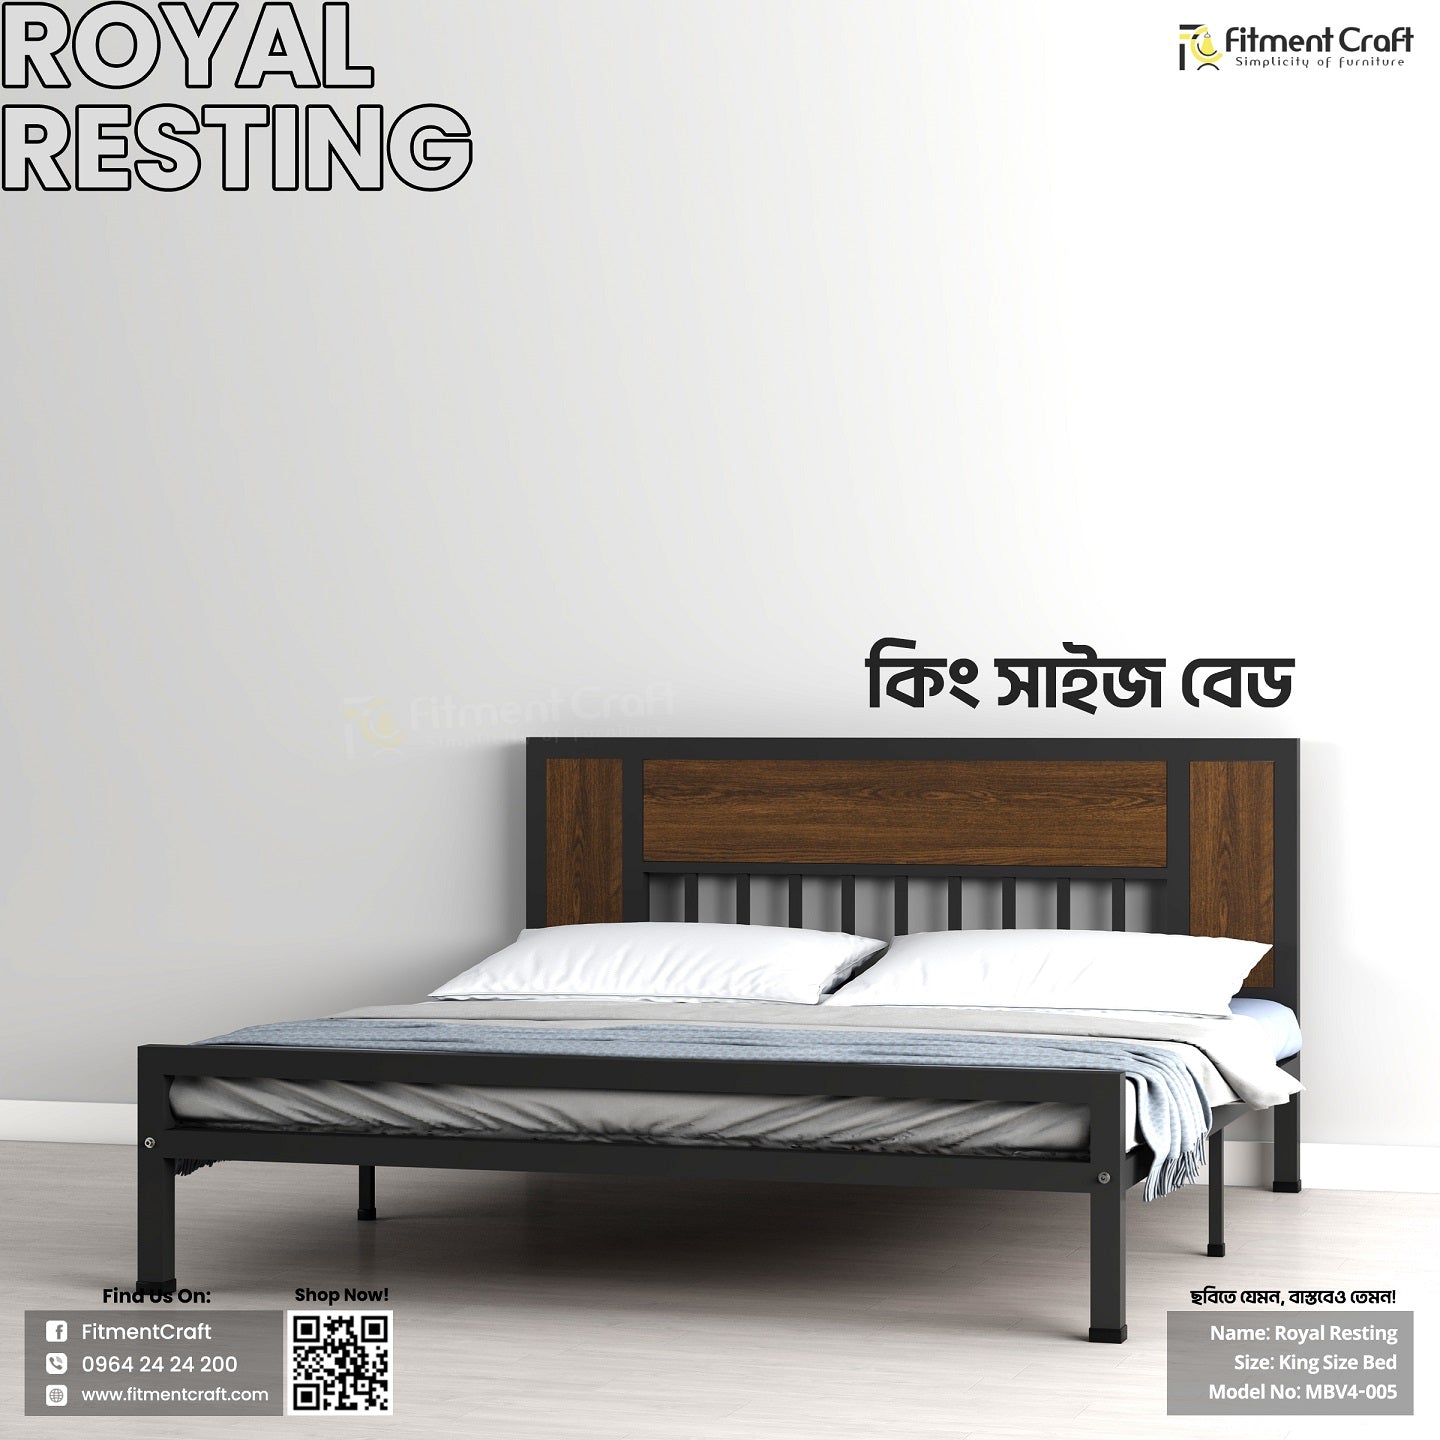 Royal Resting - King Size Bed | MBV4-005